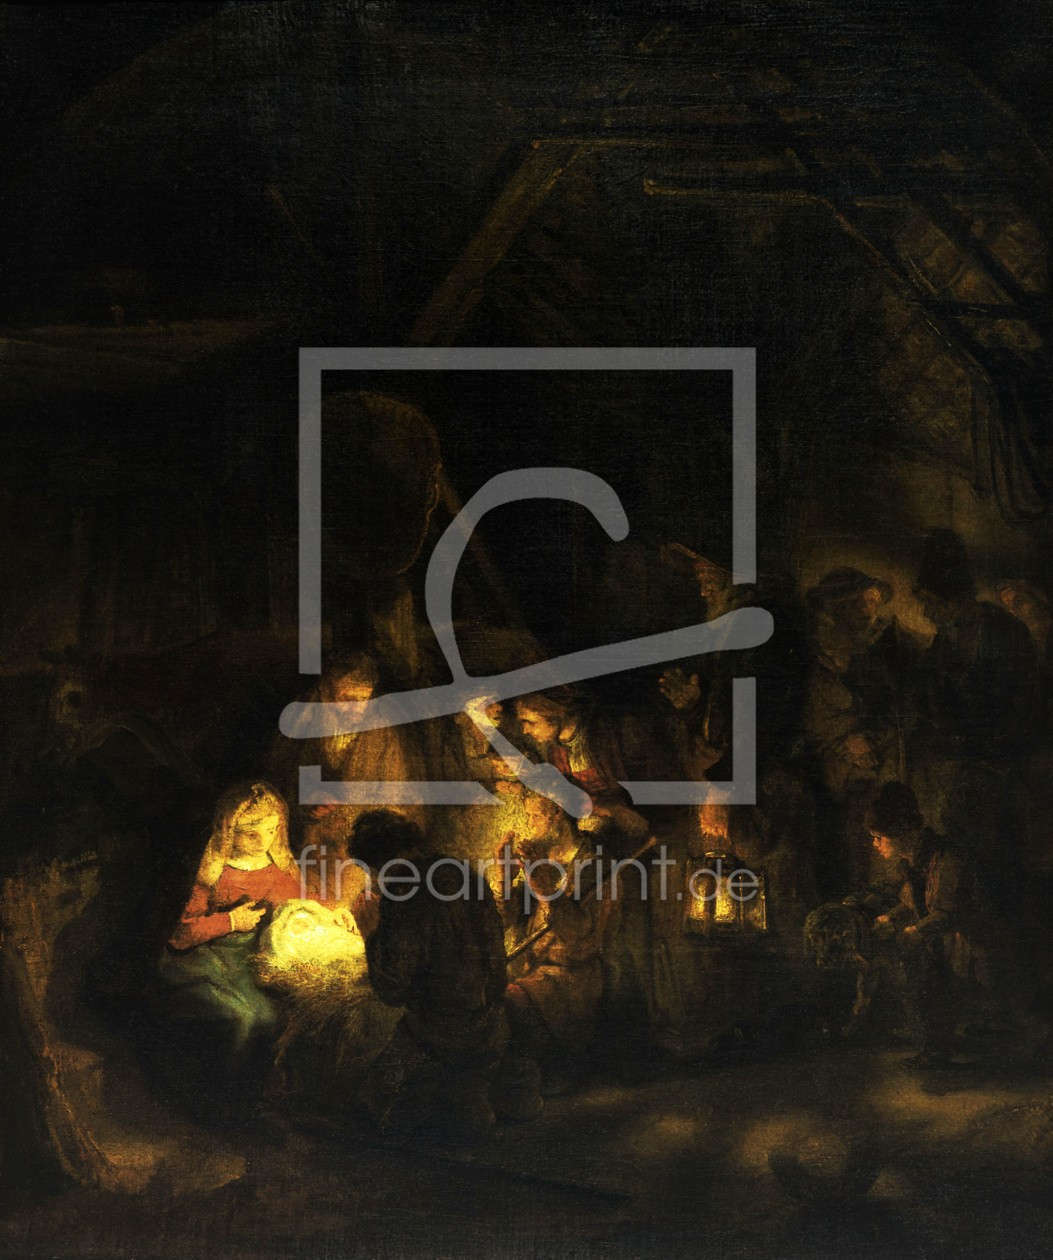 Bild-Nr.: 30007719 Rembrandt / Adoration of the shepherds erstellt von Rembrandt Harmenszoon van Rijn